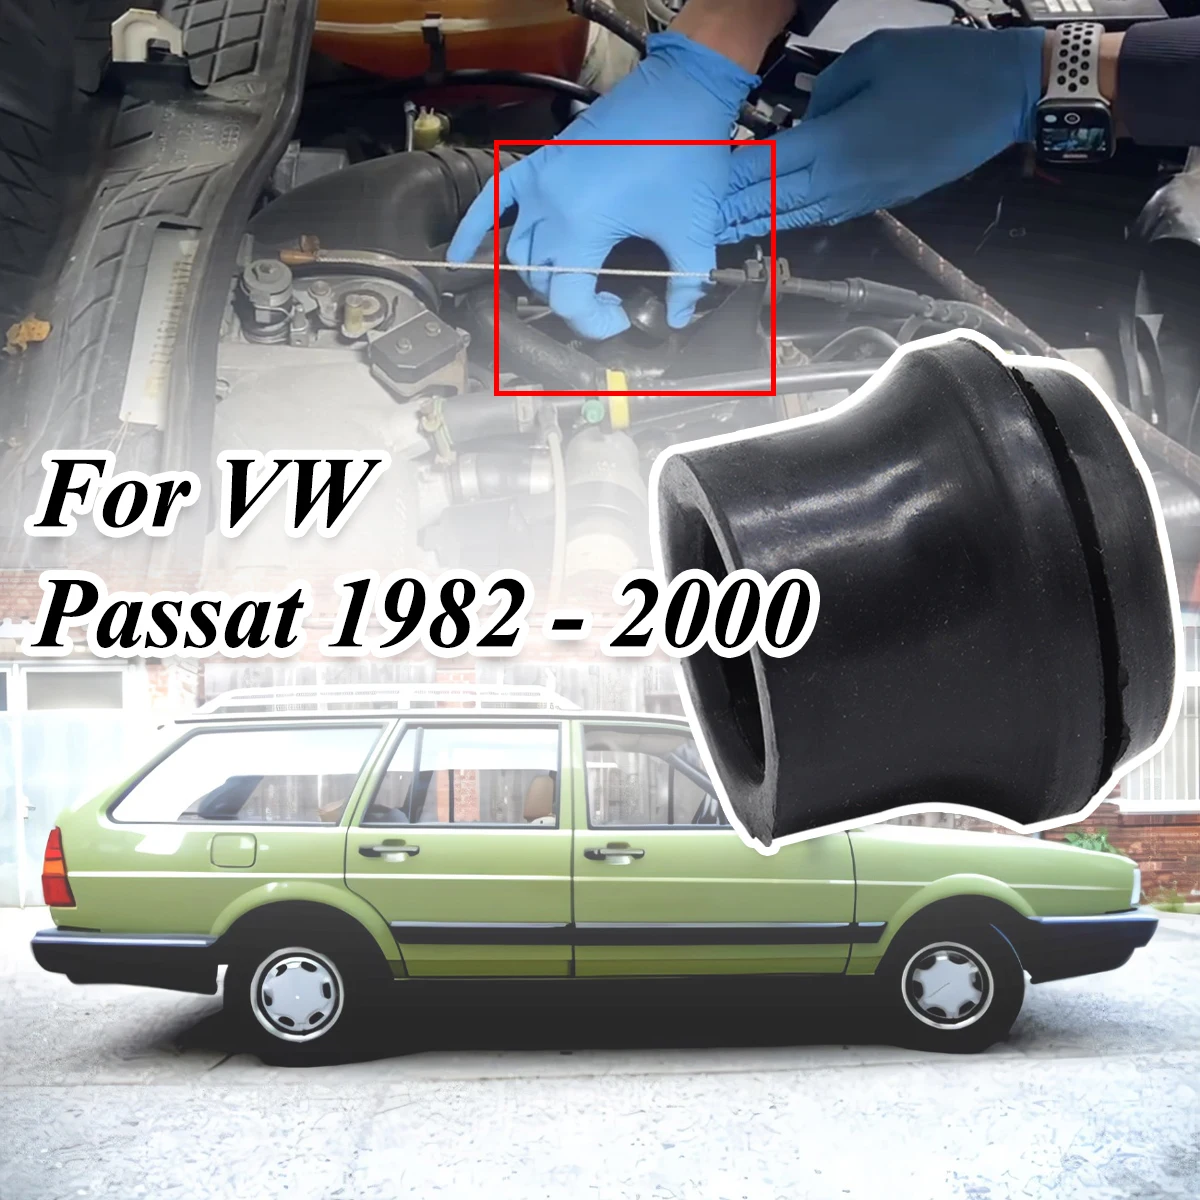 

For VW Passat 82-2000 Rocker Valve Cover Grommet Oil Filler Seal Breather Bung Cylinder Head Crankcase Ventilation Rubber Gasket